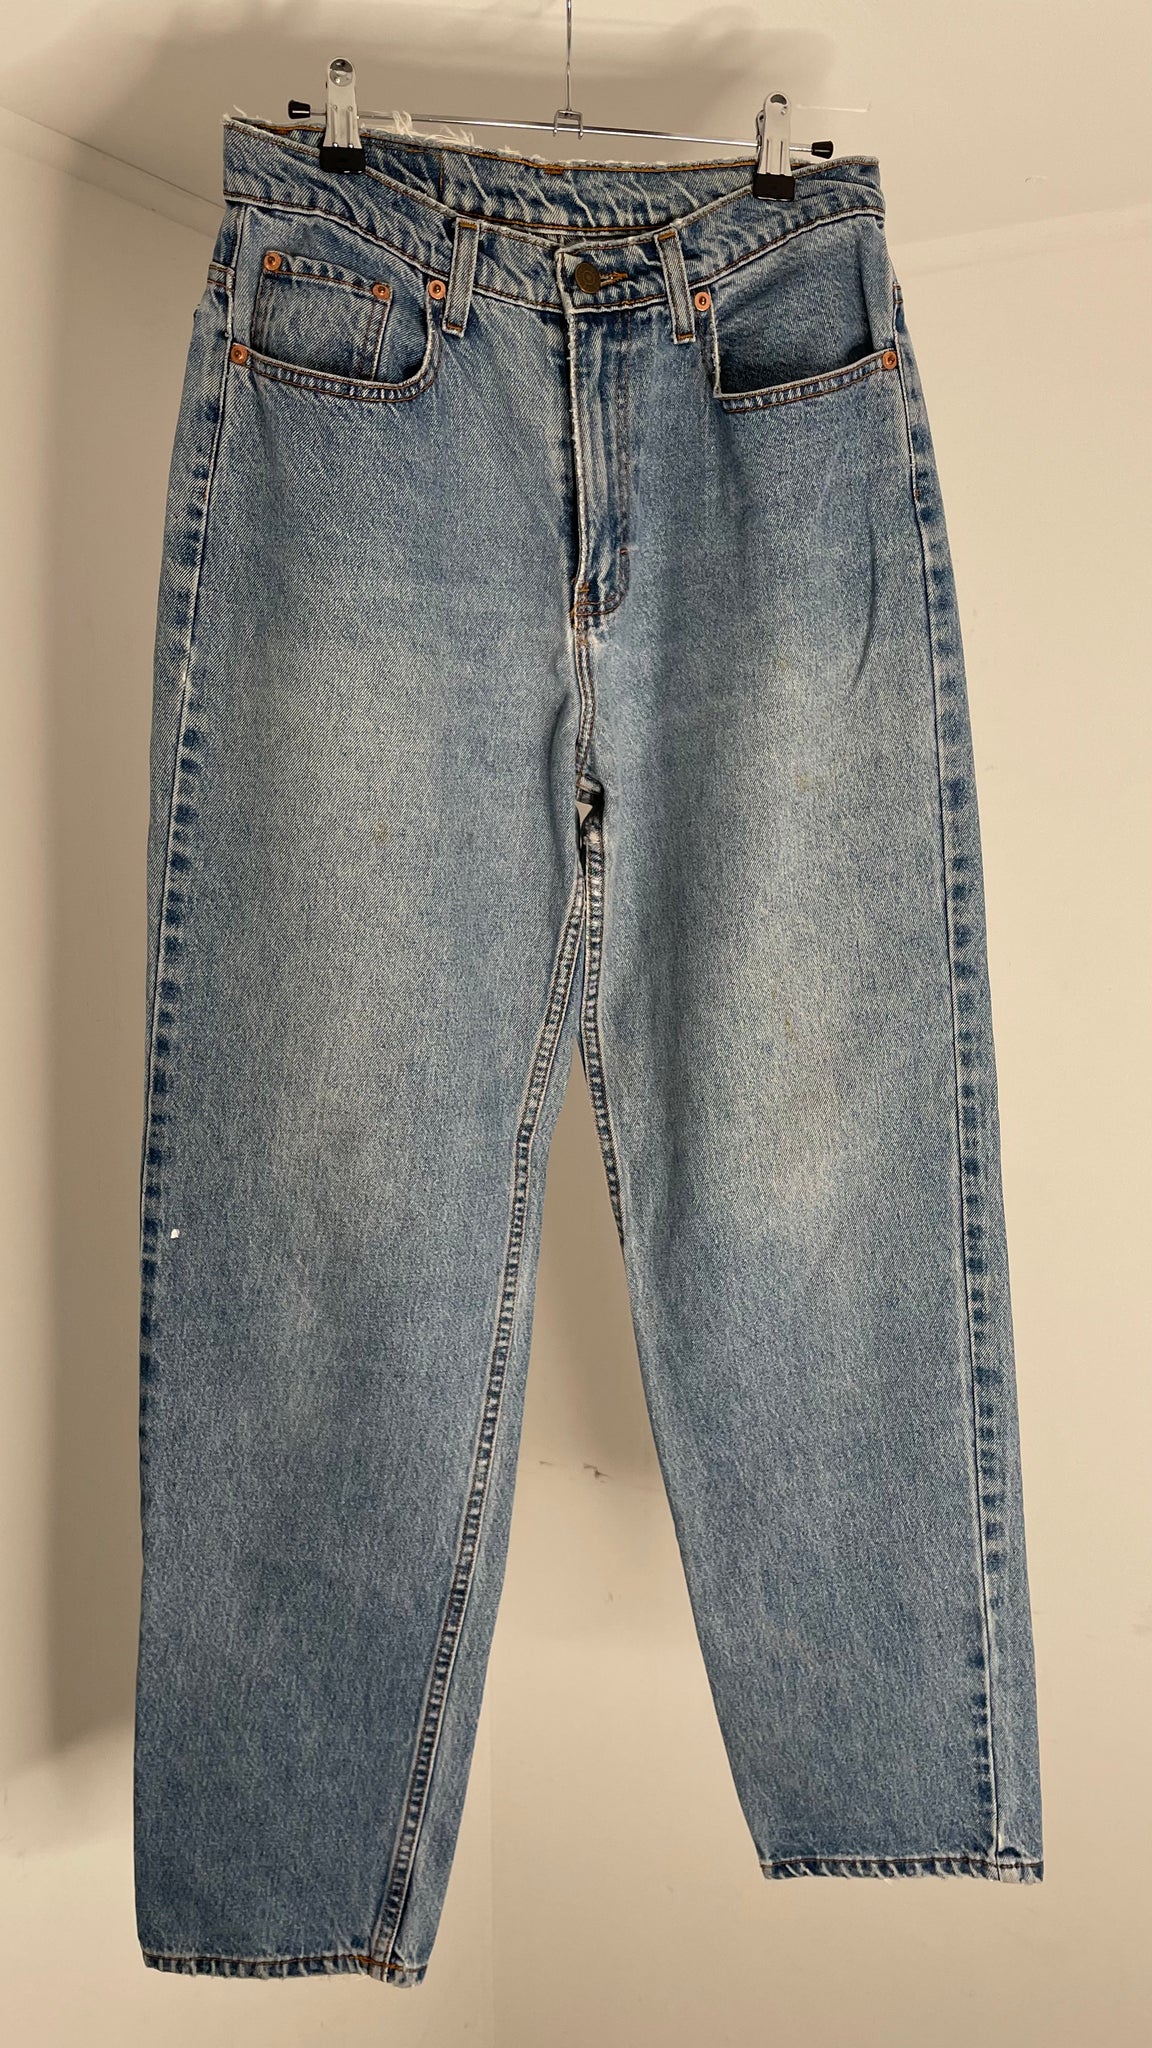 Vintage Jordache Jeans 30